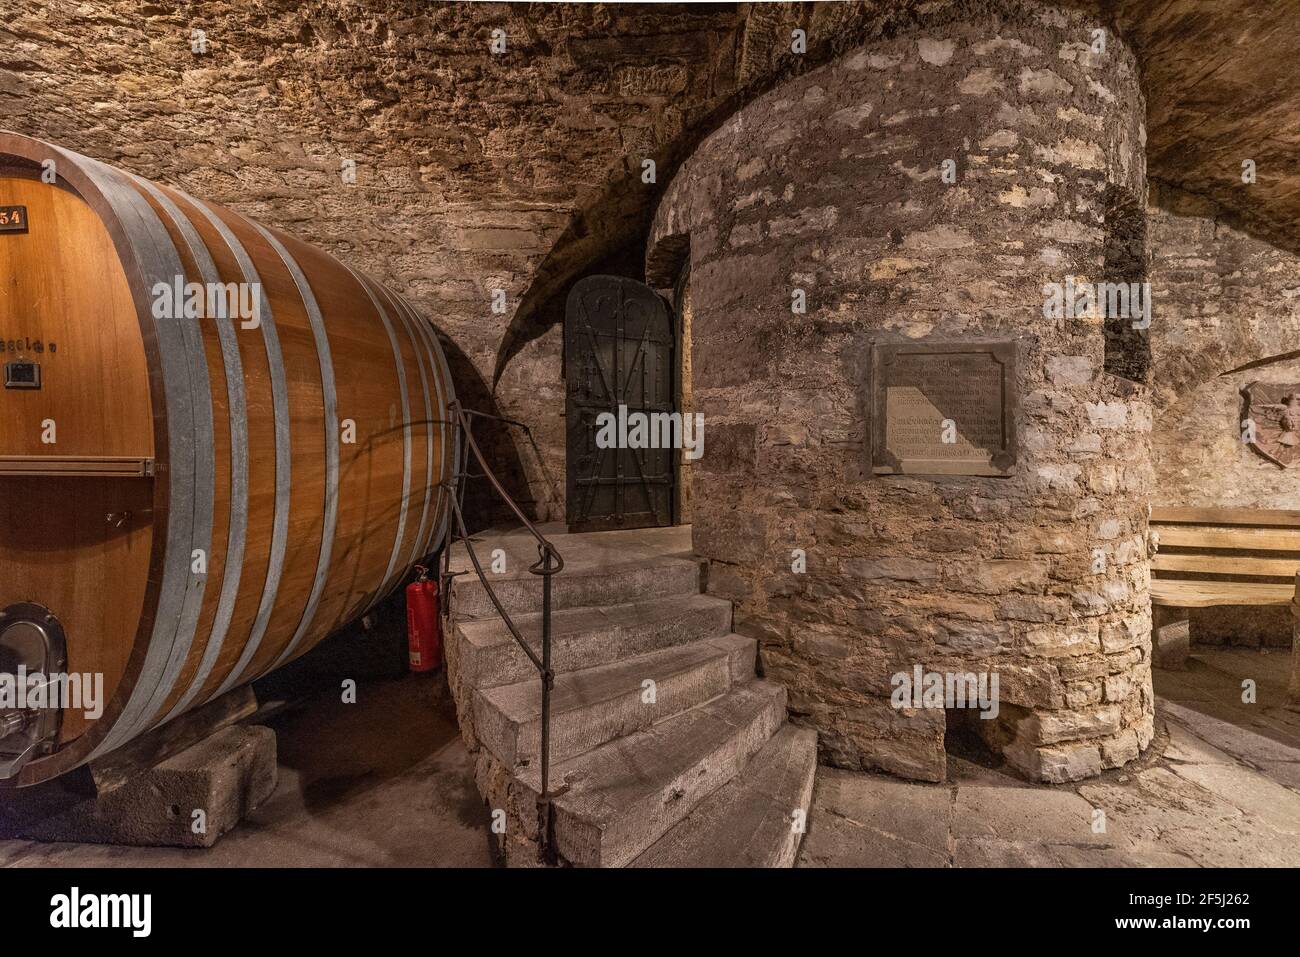 cask cellar of Bürgerspital winery, Würzburg, Germany Stock Photo